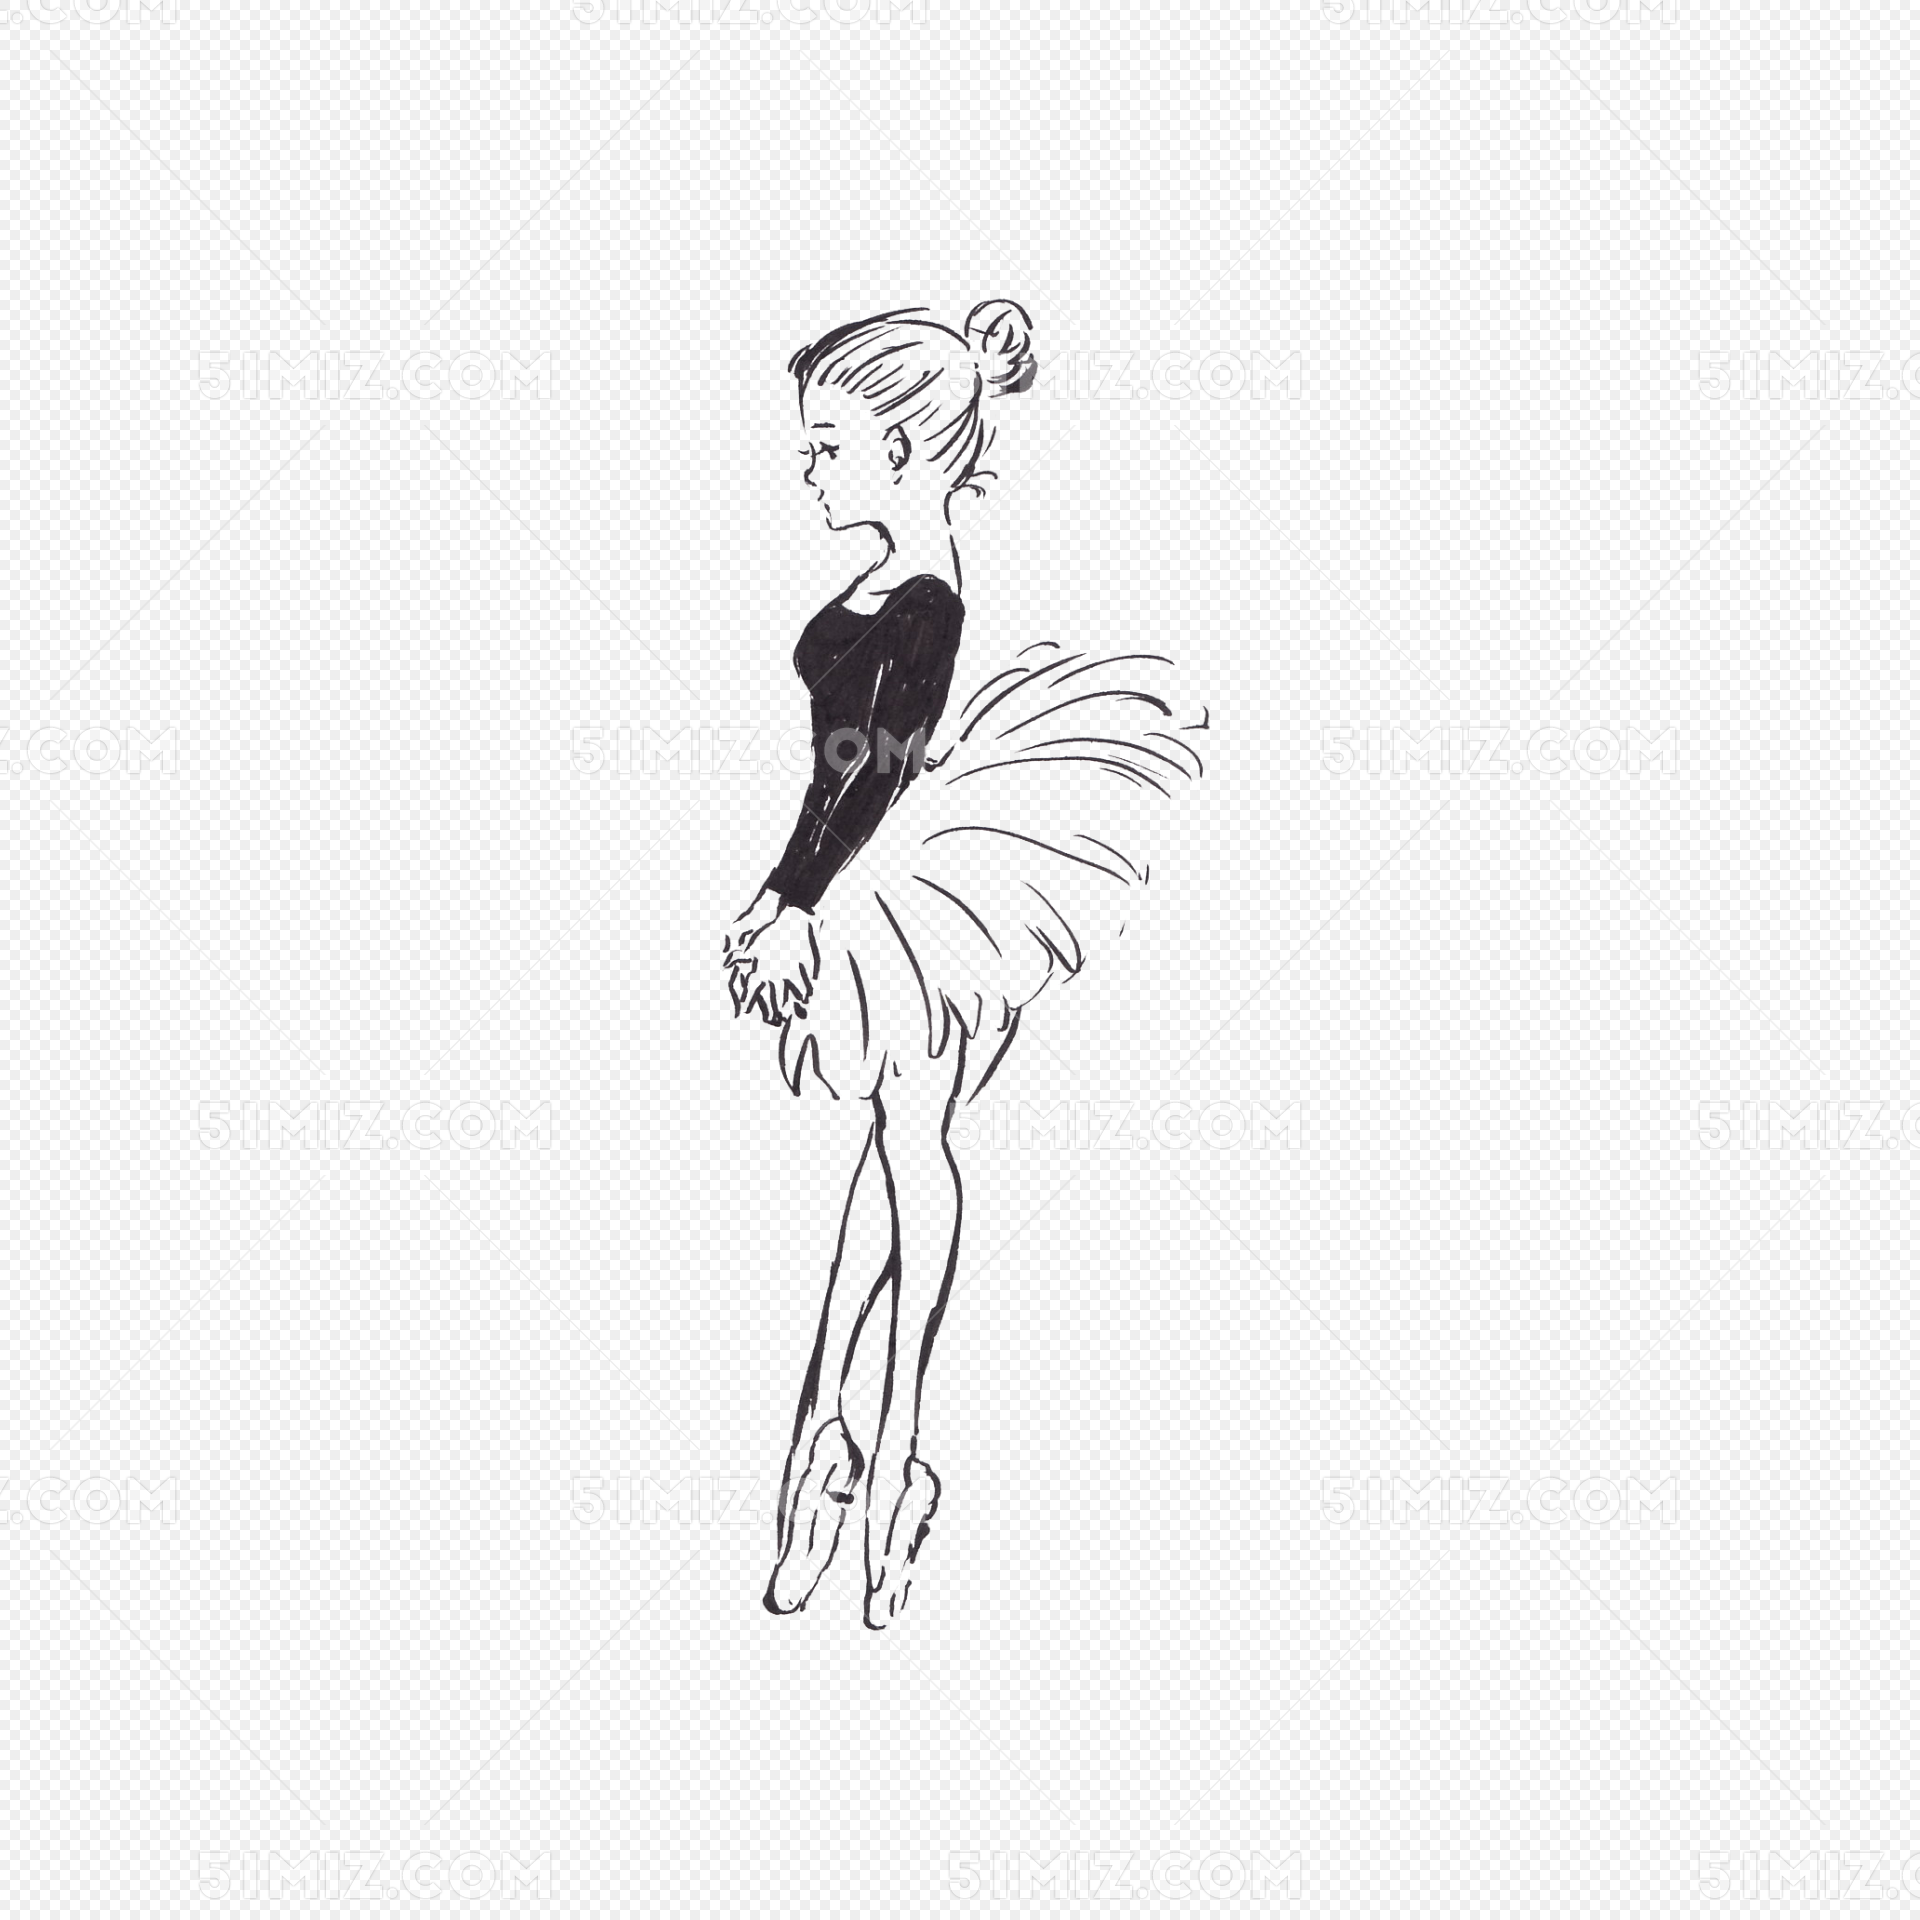 芭蕾舞动作简笔画-图库-五毛网